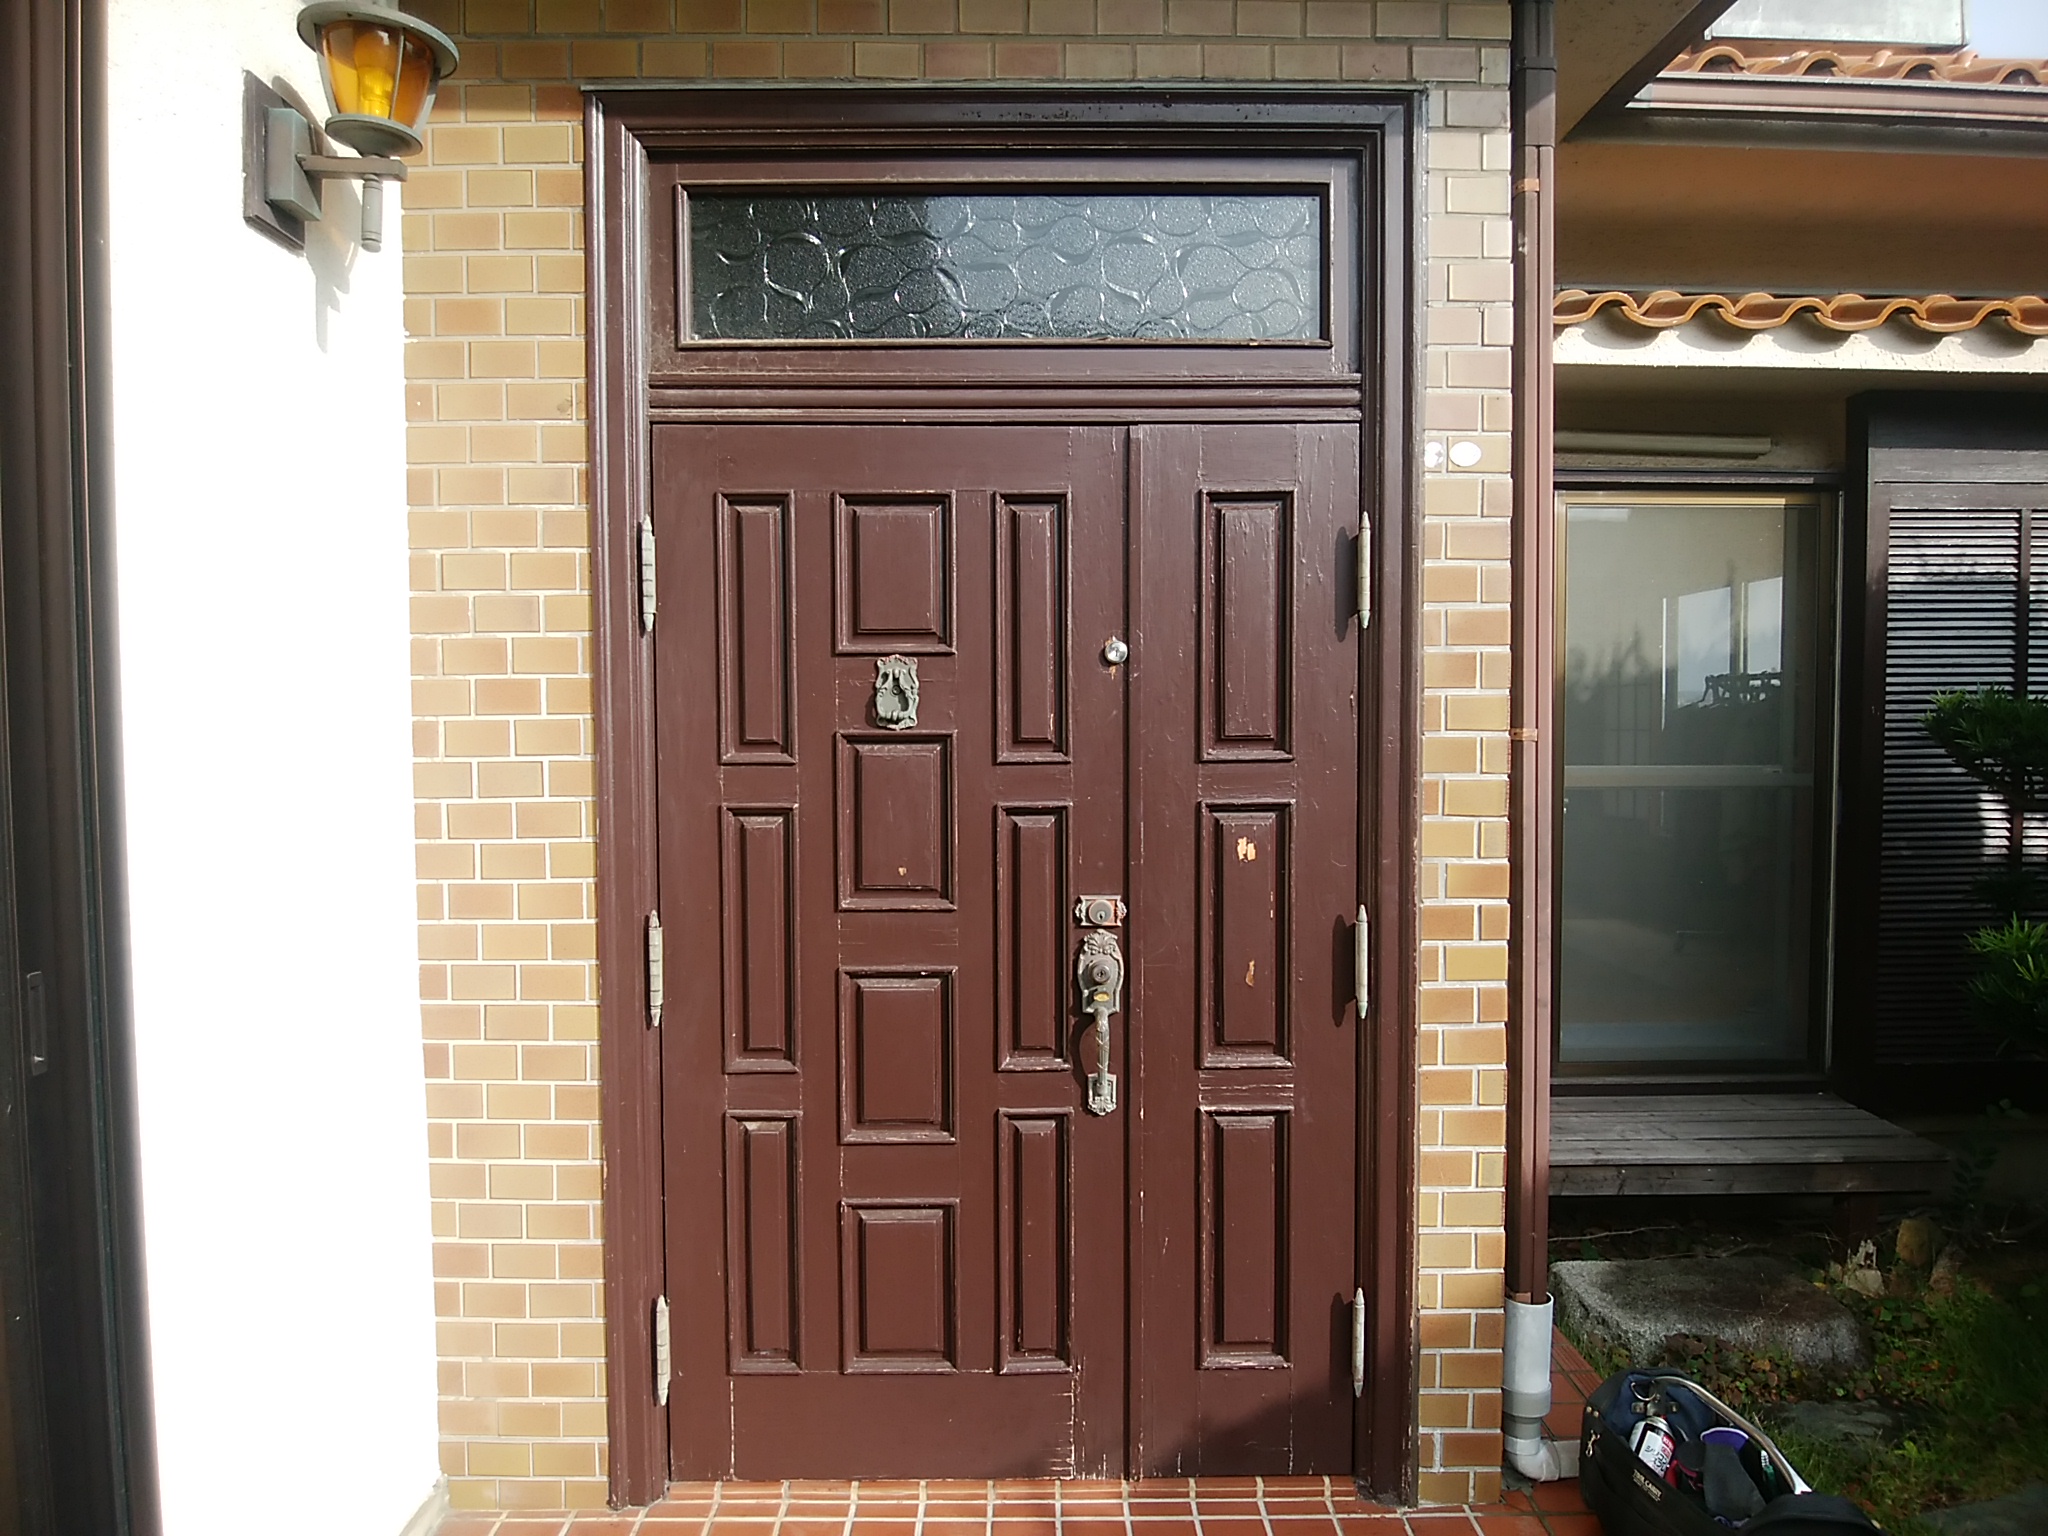 Lixilリシェントｄ41型 塗装がはがれ てしまった玄関ドアをリシェントに交換 埼玉県吉川市の工事事例 玄関ドアのリフォームなら玄関ドアマイスターへお任せください